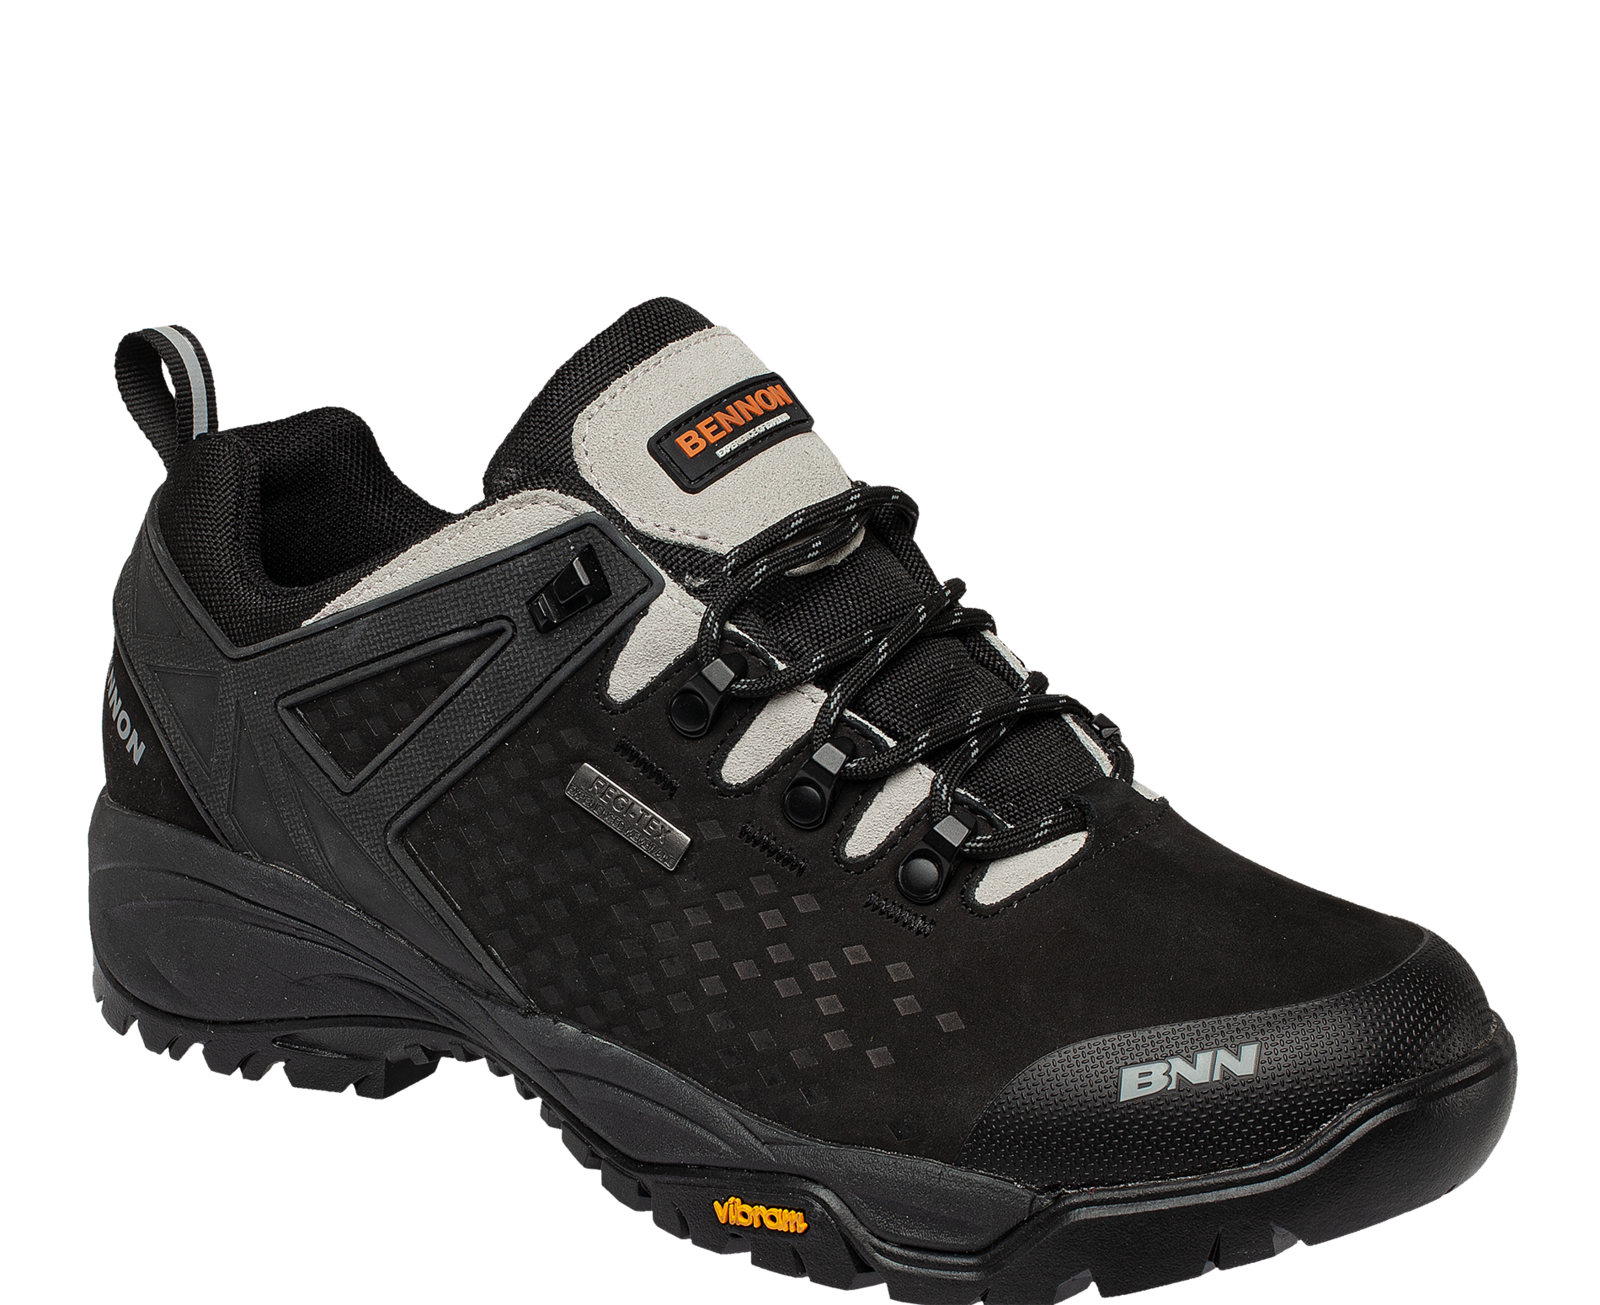 Outdoorová obuv Bennon Recado XTR O2 s membránou - veľkosť: 48, farba: čierna